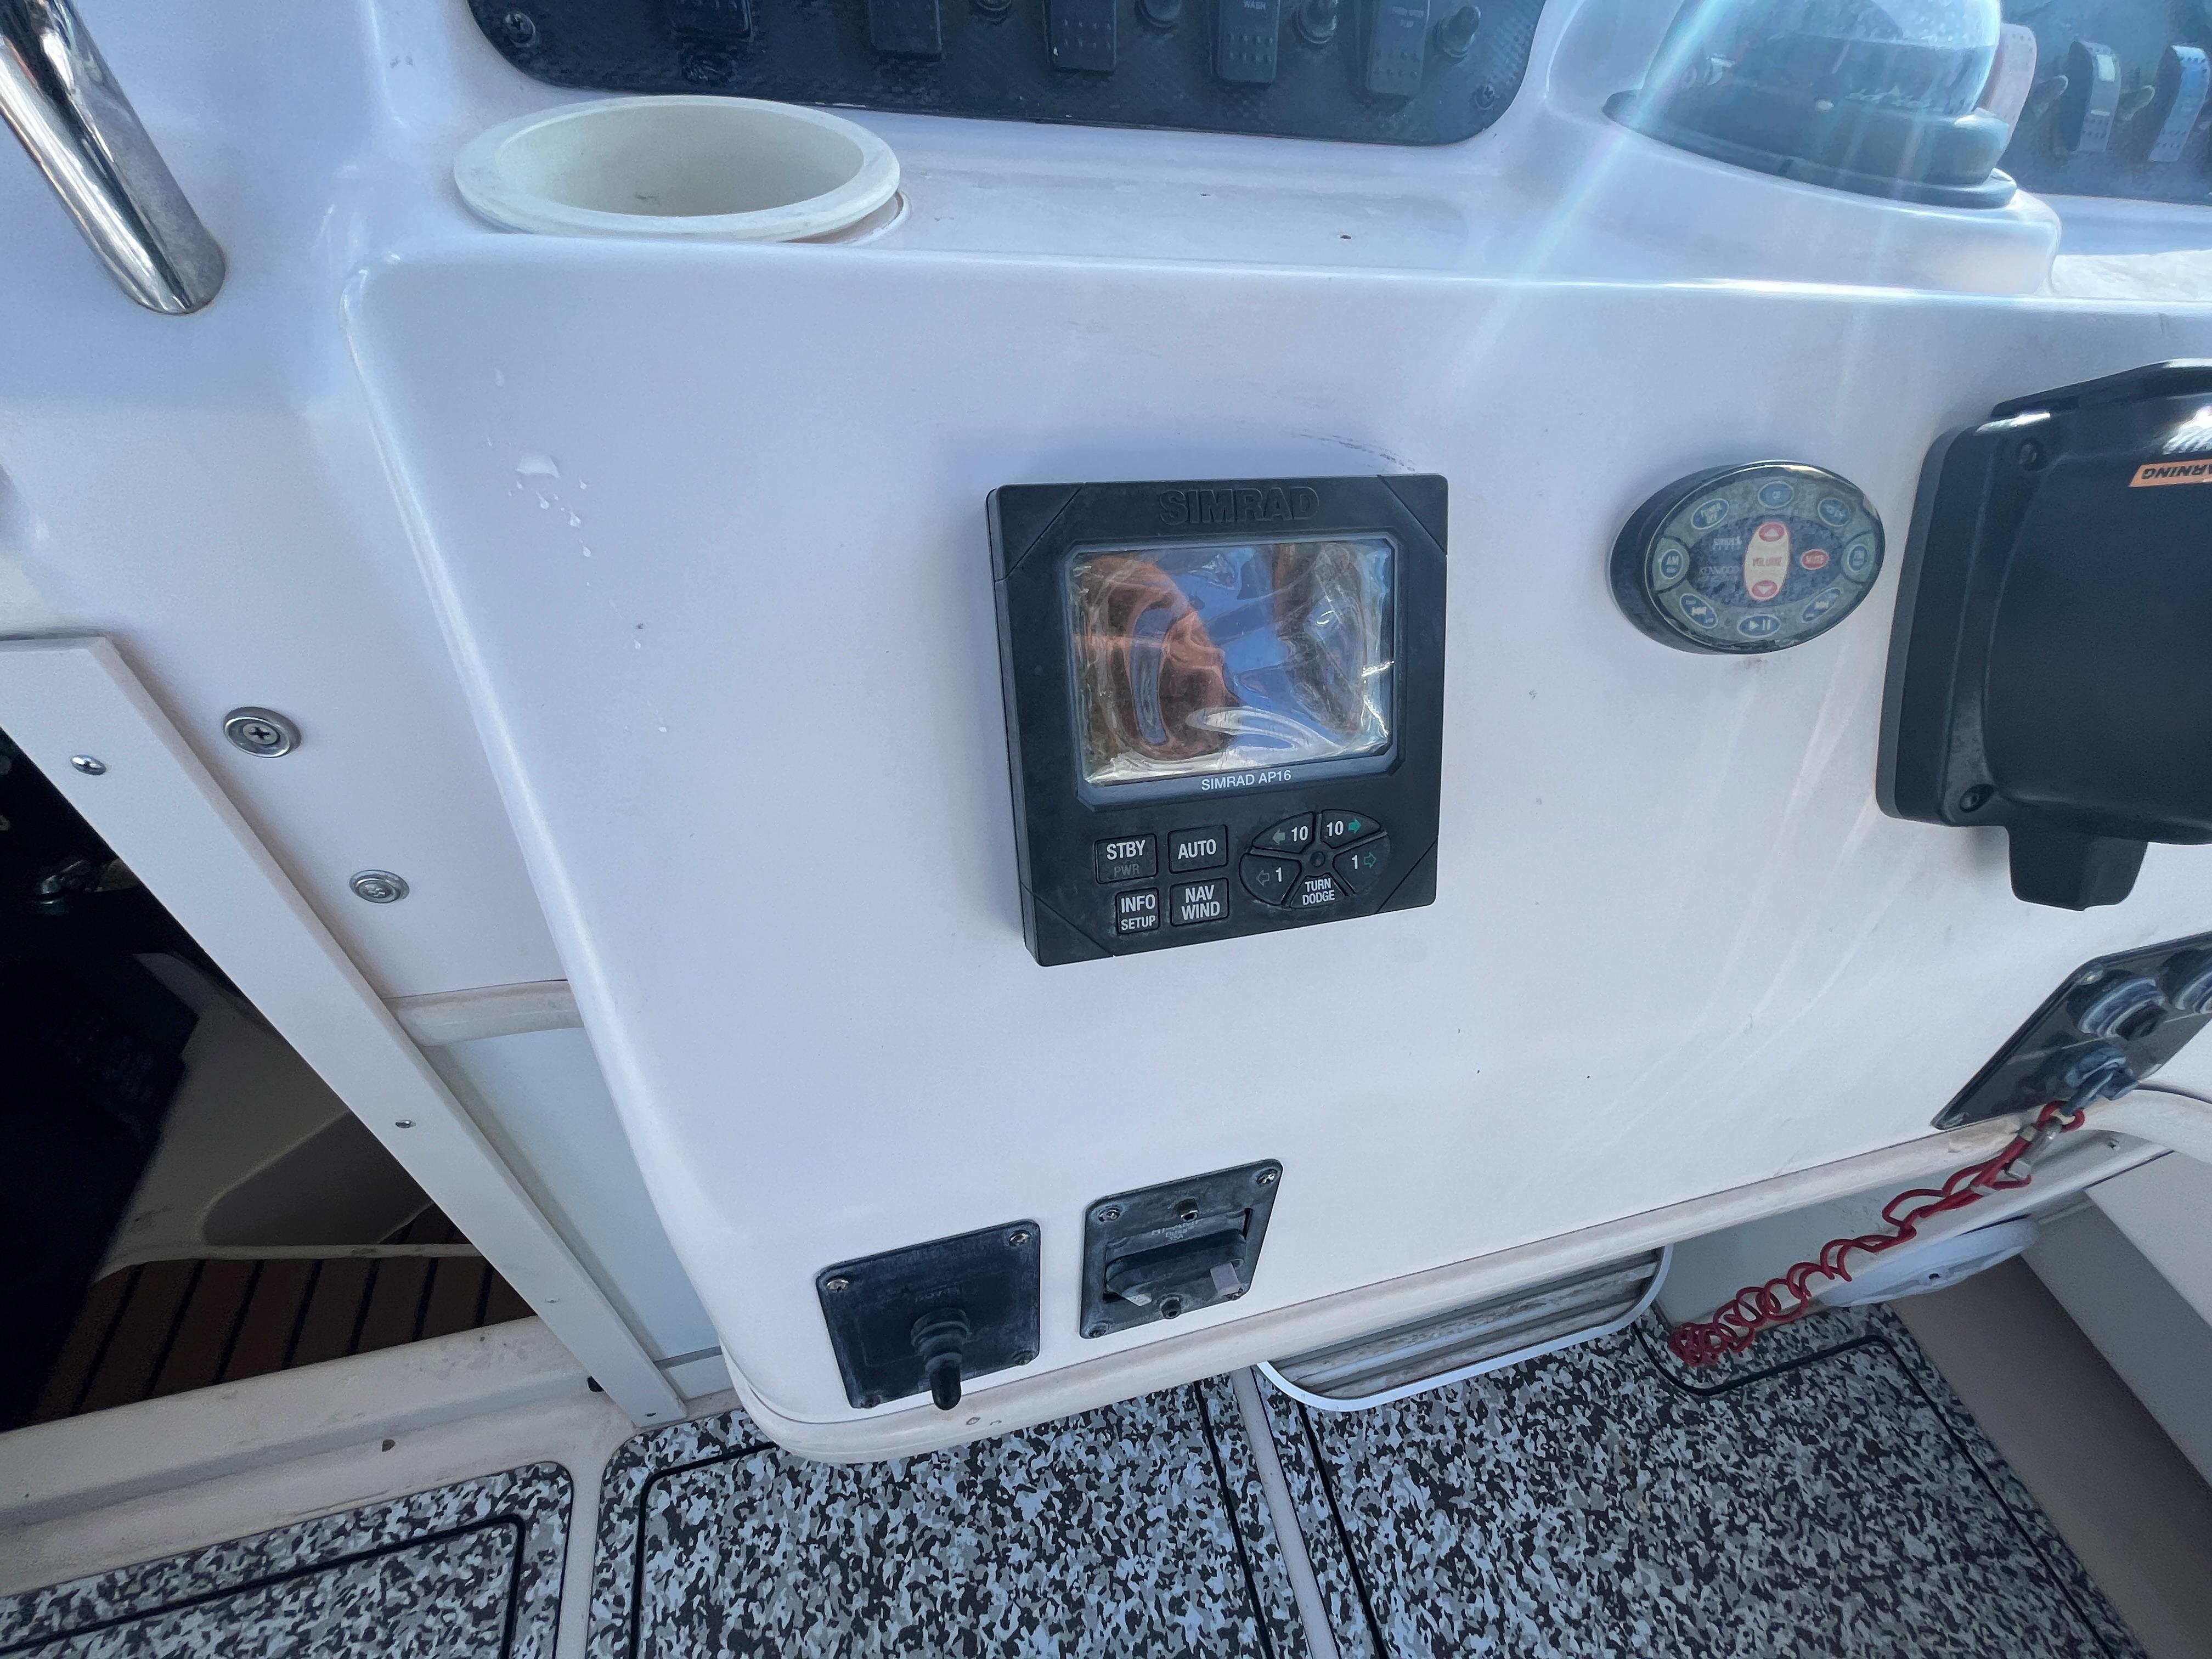 Grady-White 282 Sailfish, Autopilot and Windlass controls